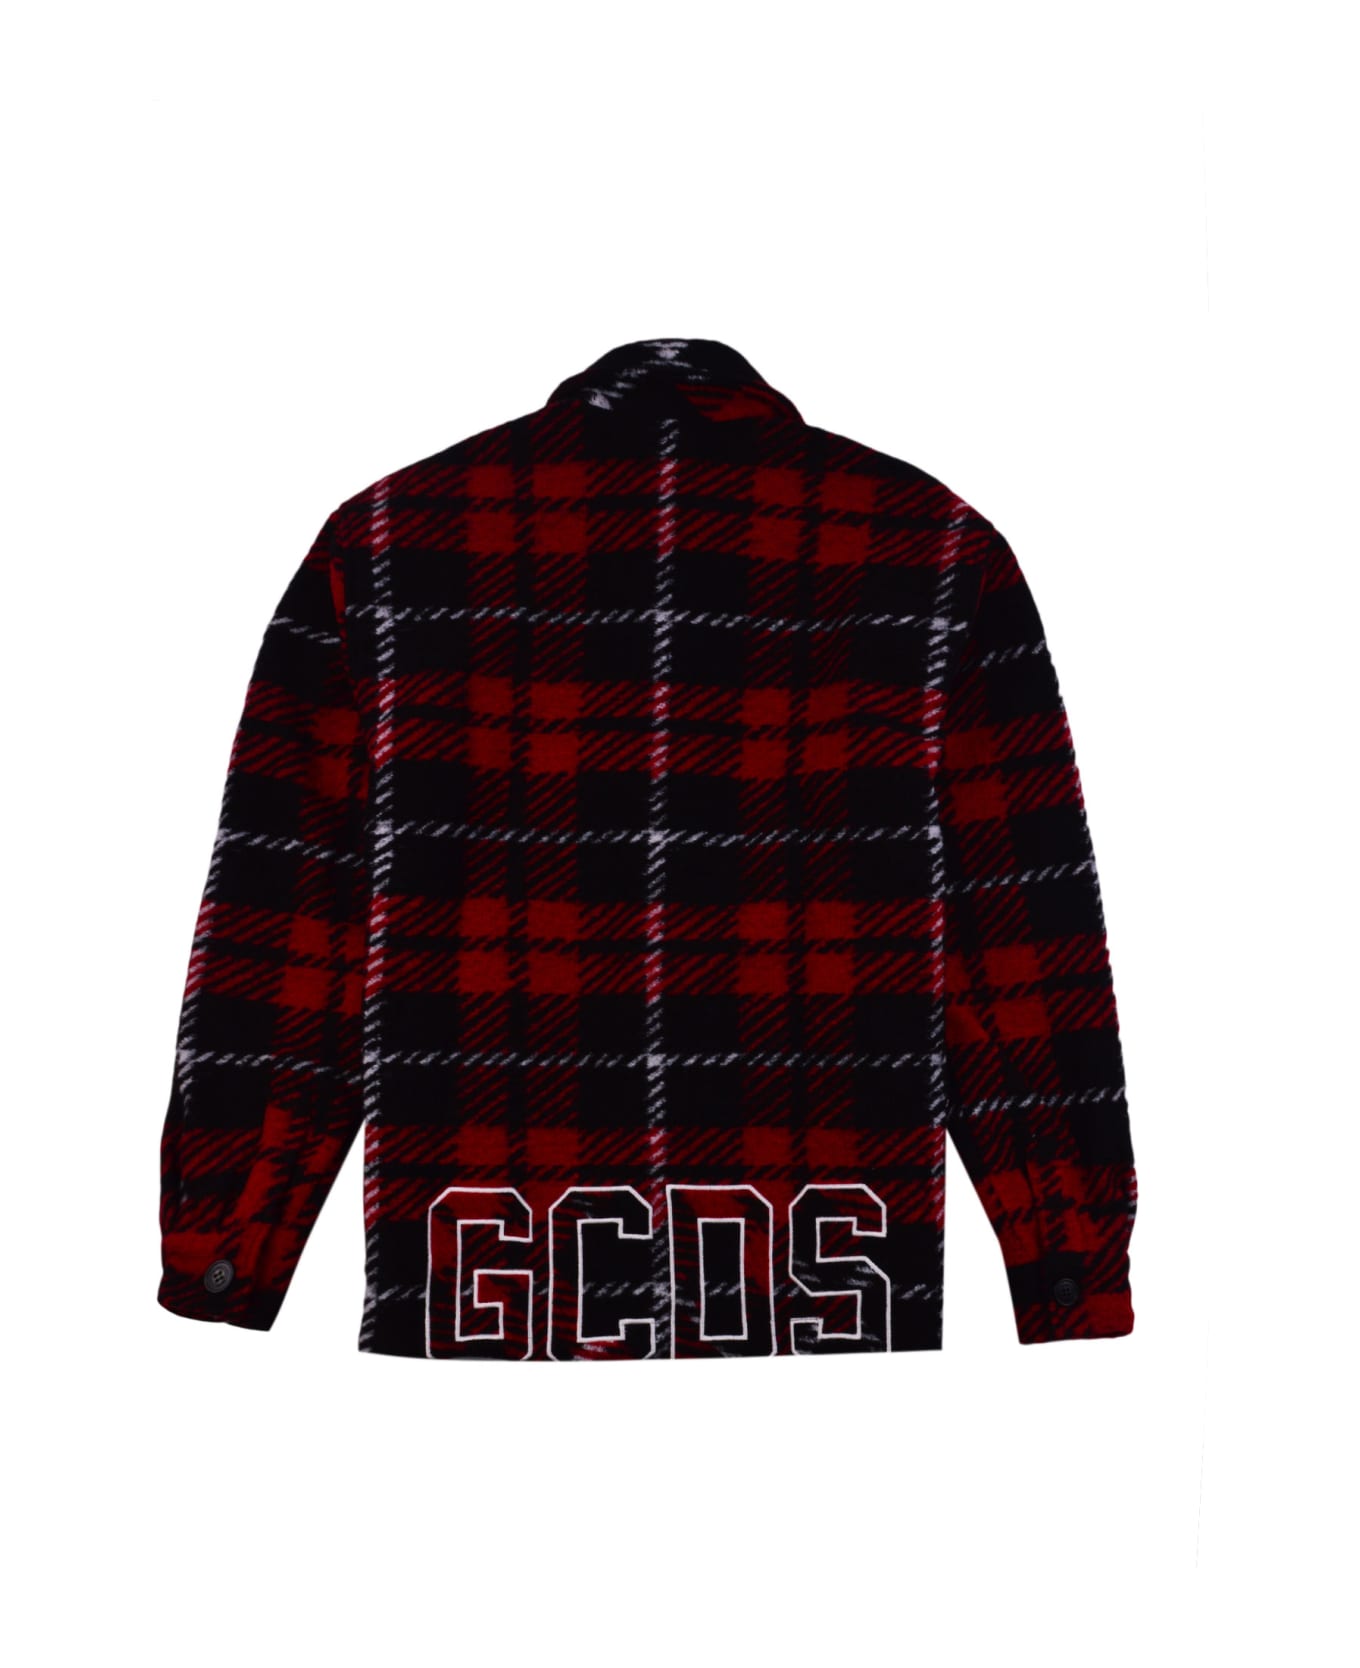 GCDS Shirt - Red シャツ